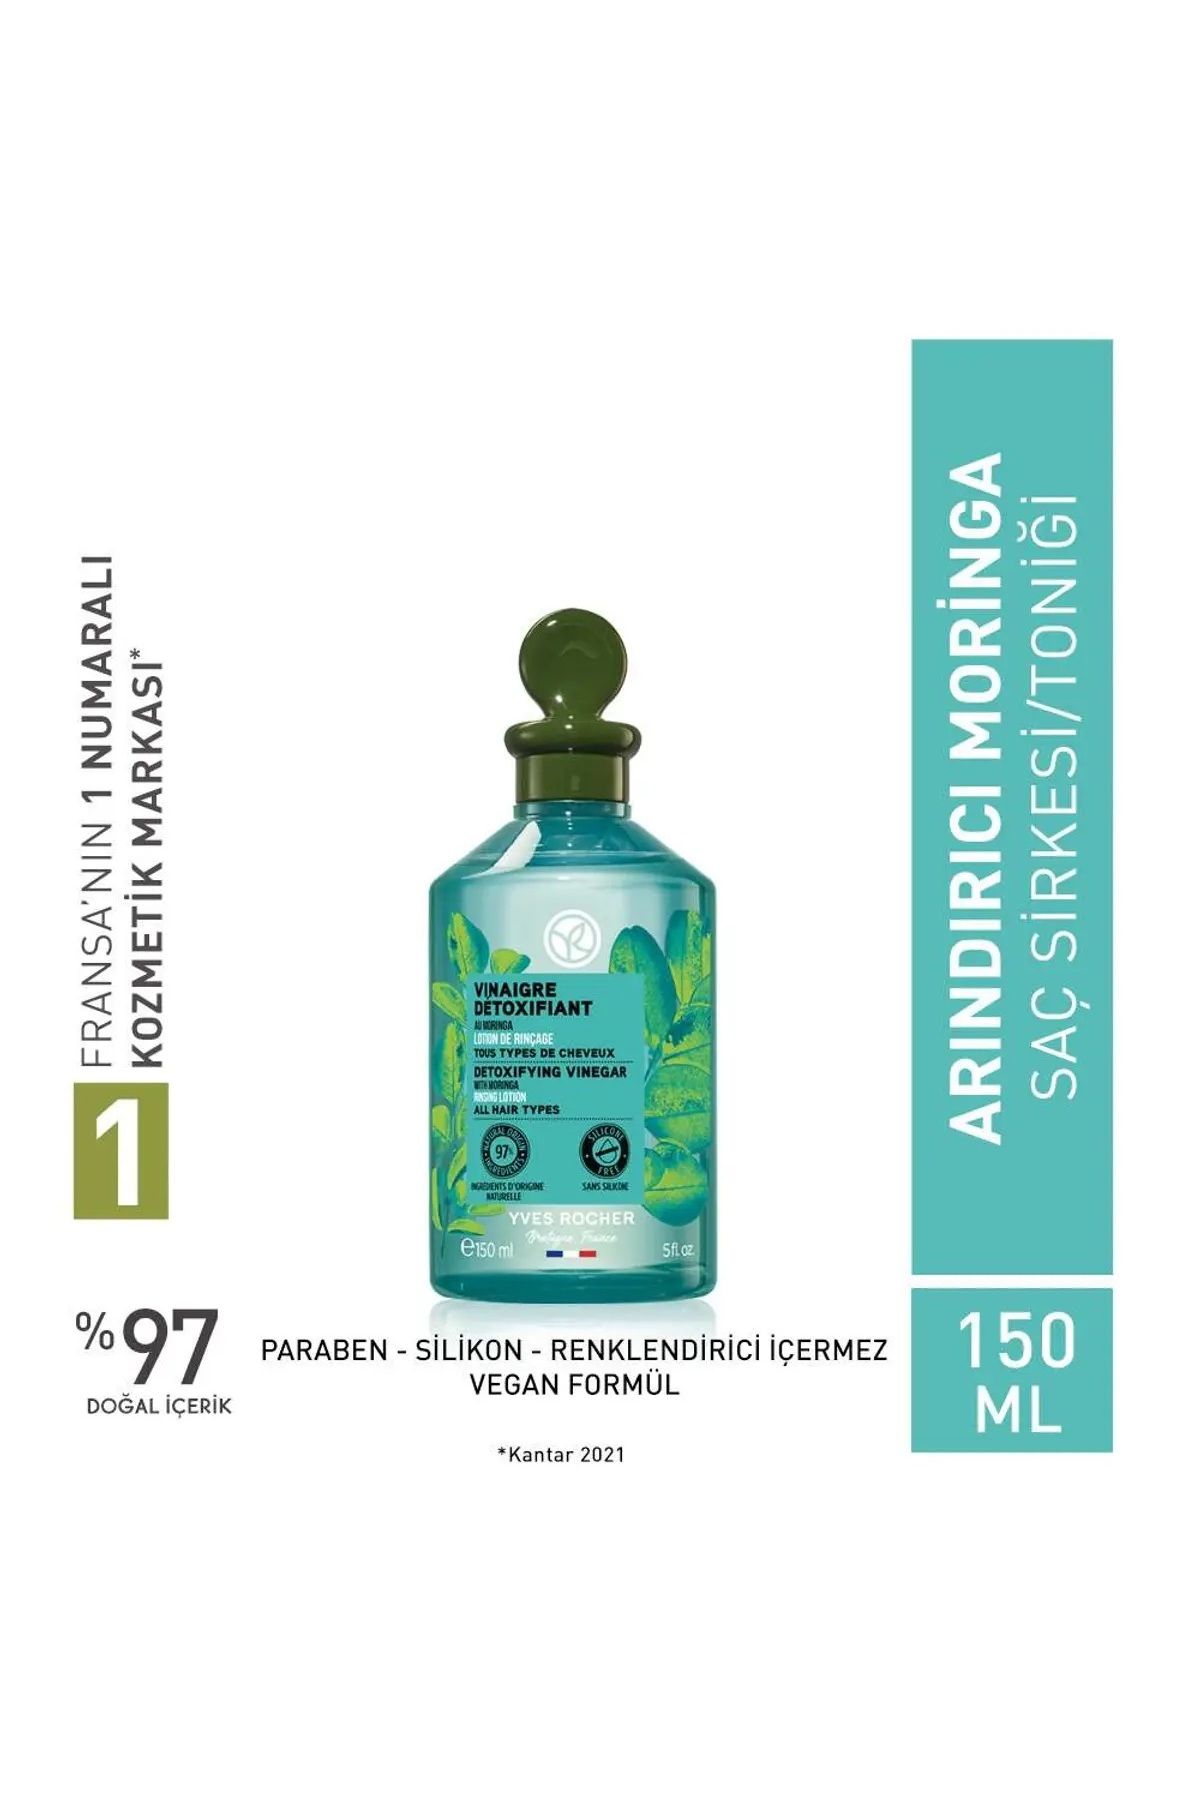 Yves Rocher Arındırıcı (Pure Detox) Moringa Saç Sirkesi/Toniği - Vegan-150 ml